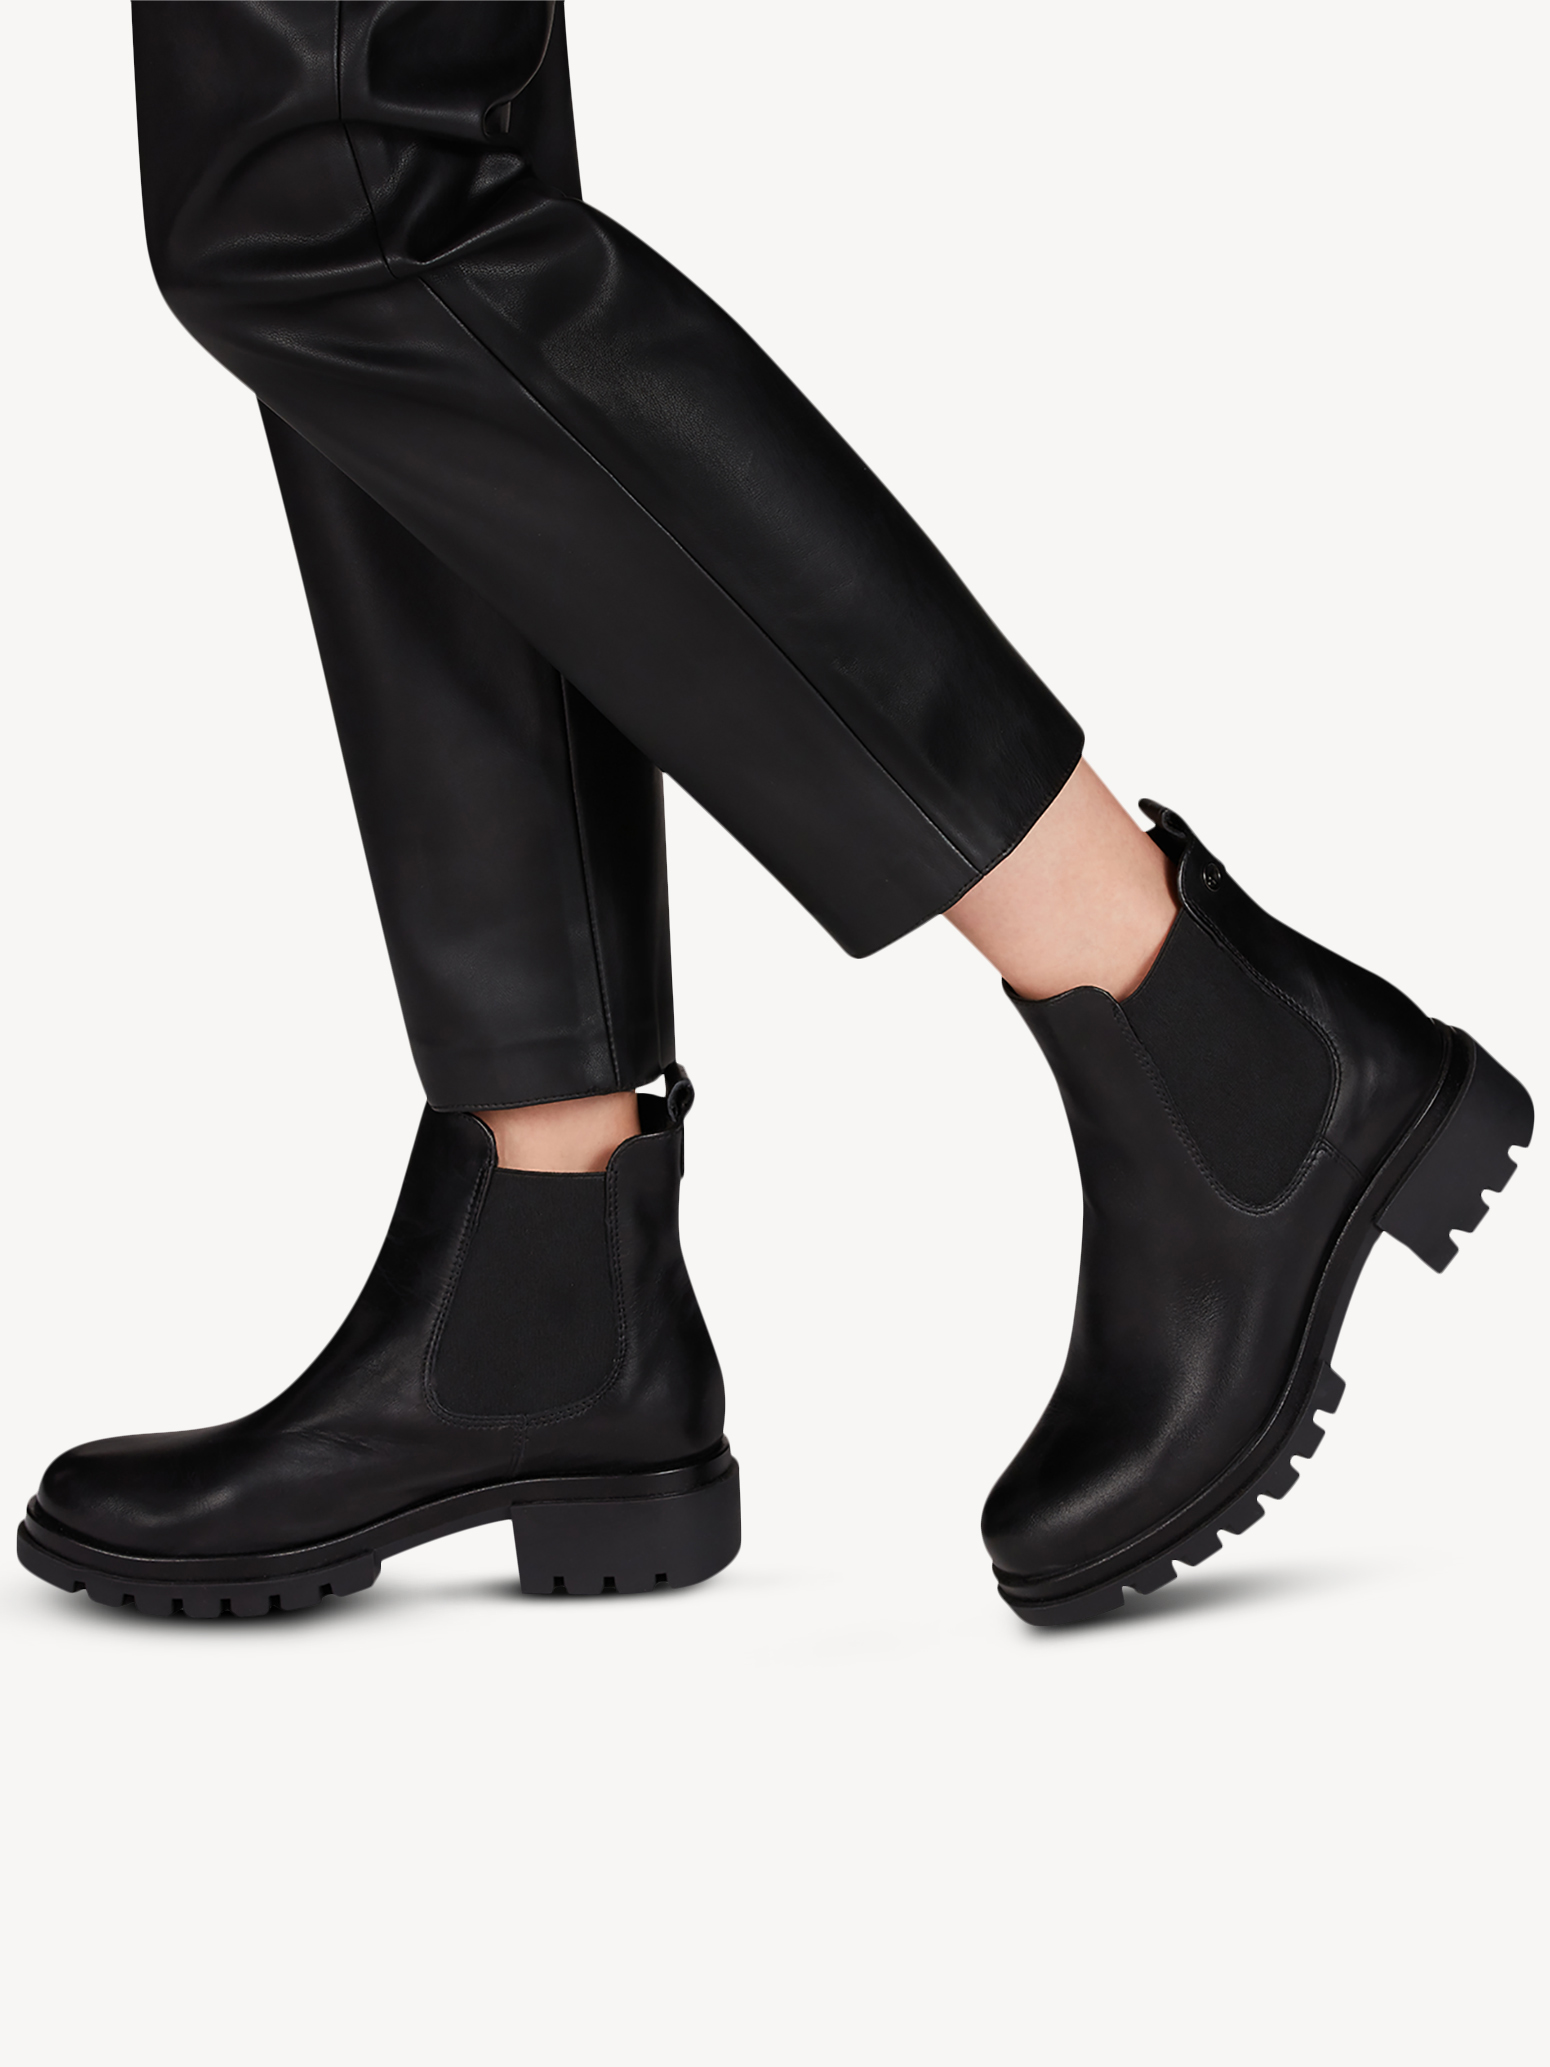 Ботинки женские 5 AW20 (черный) - изображение №1